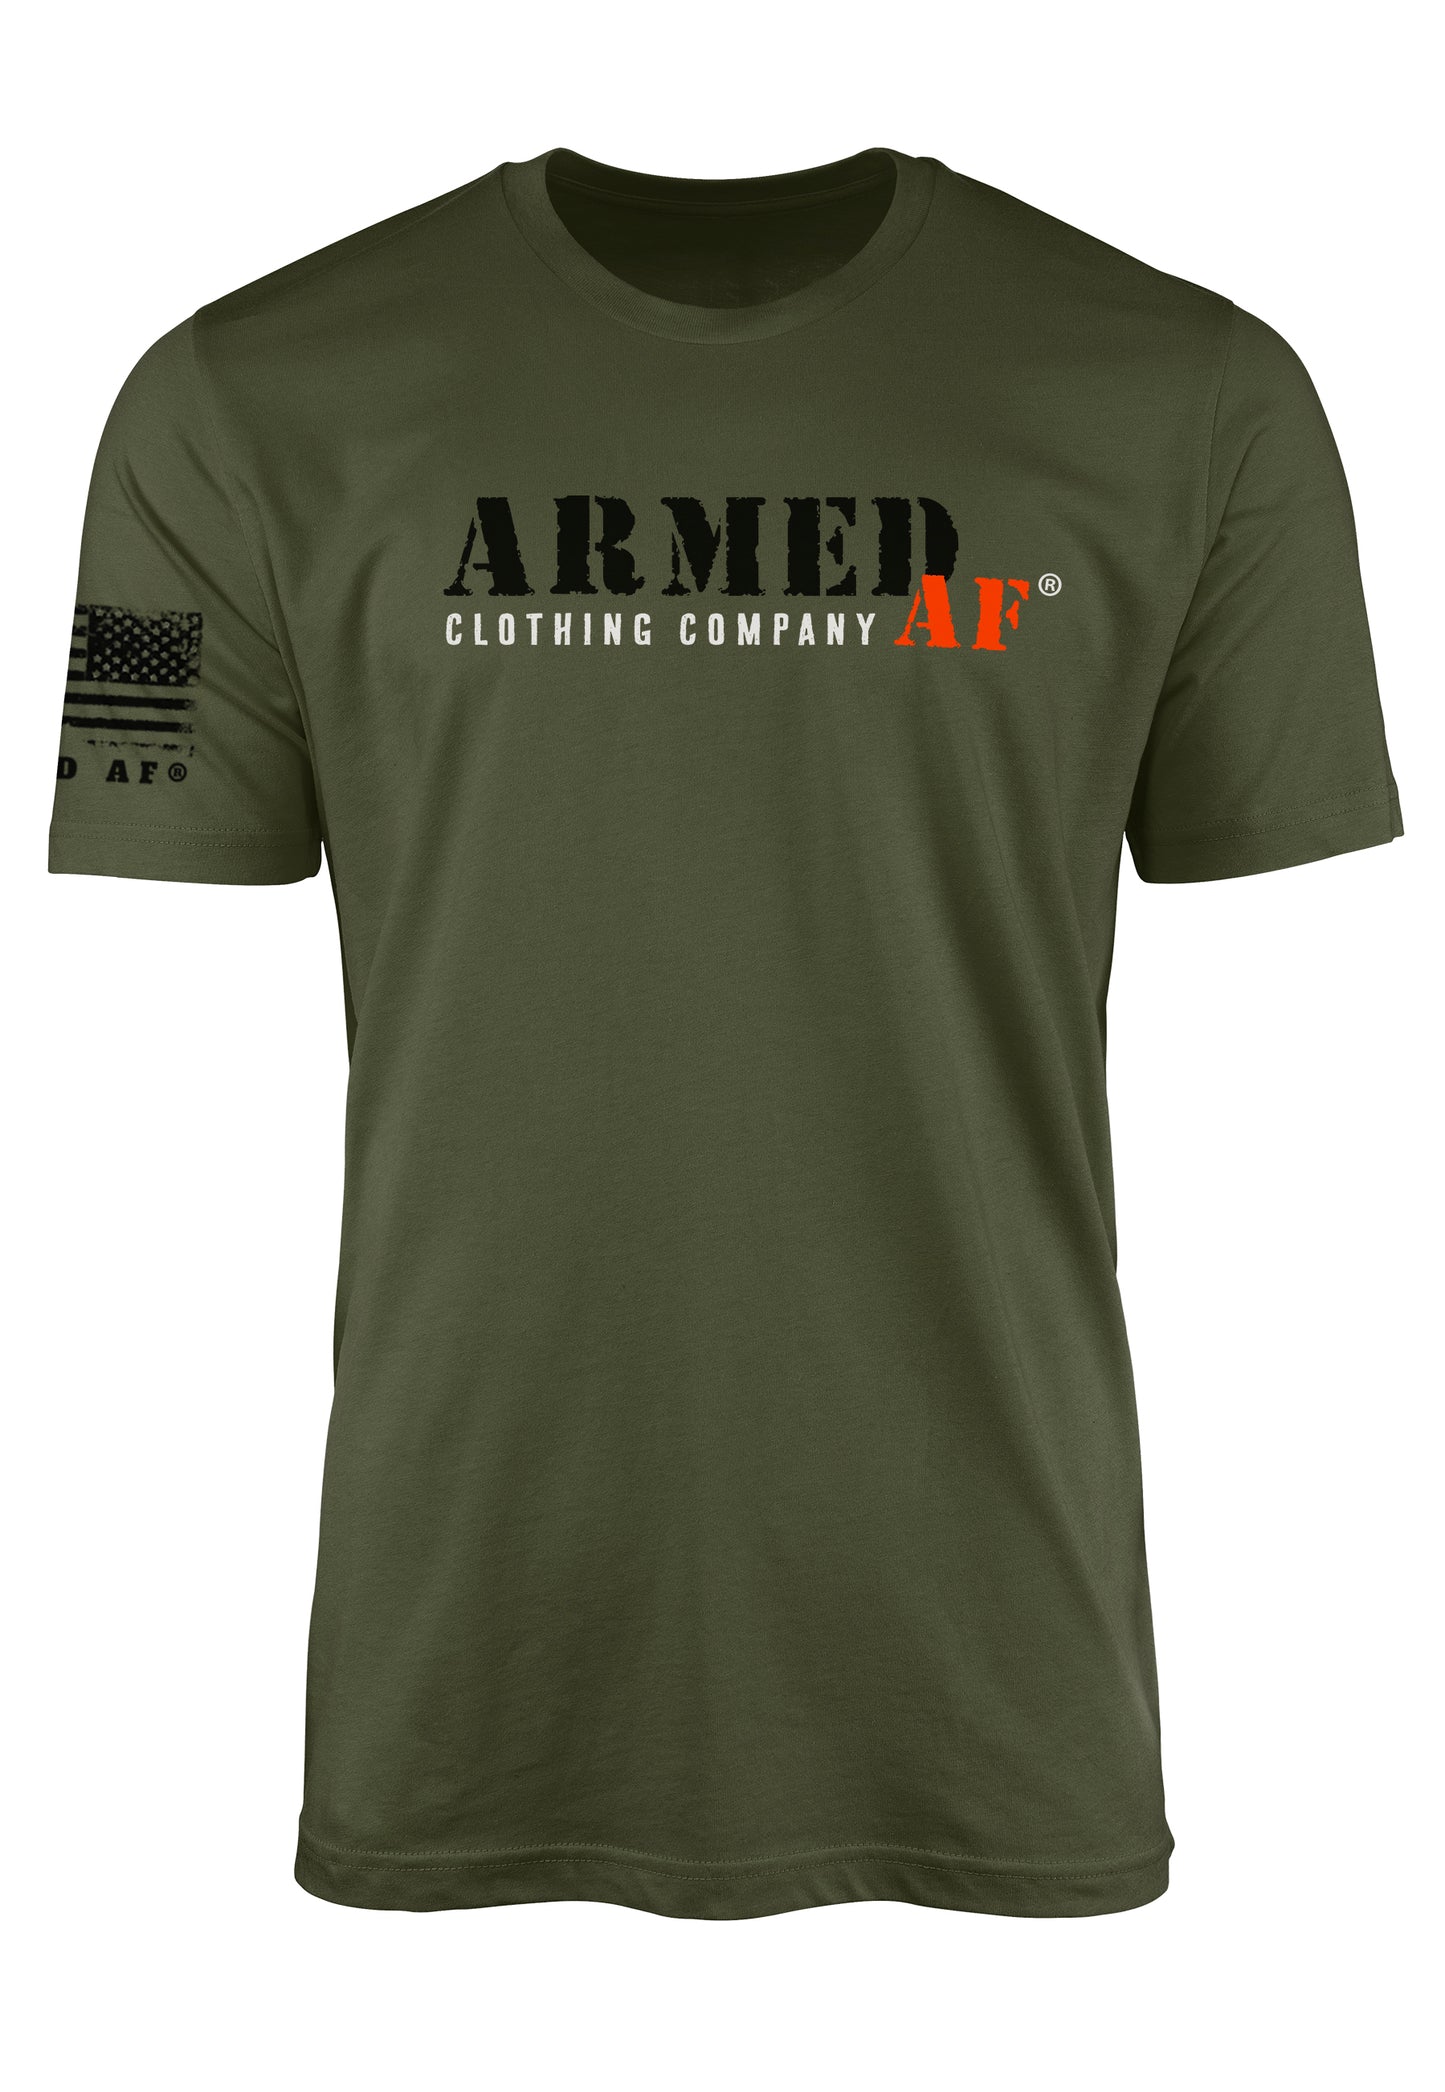 ArmedAF® second amendment t shirt